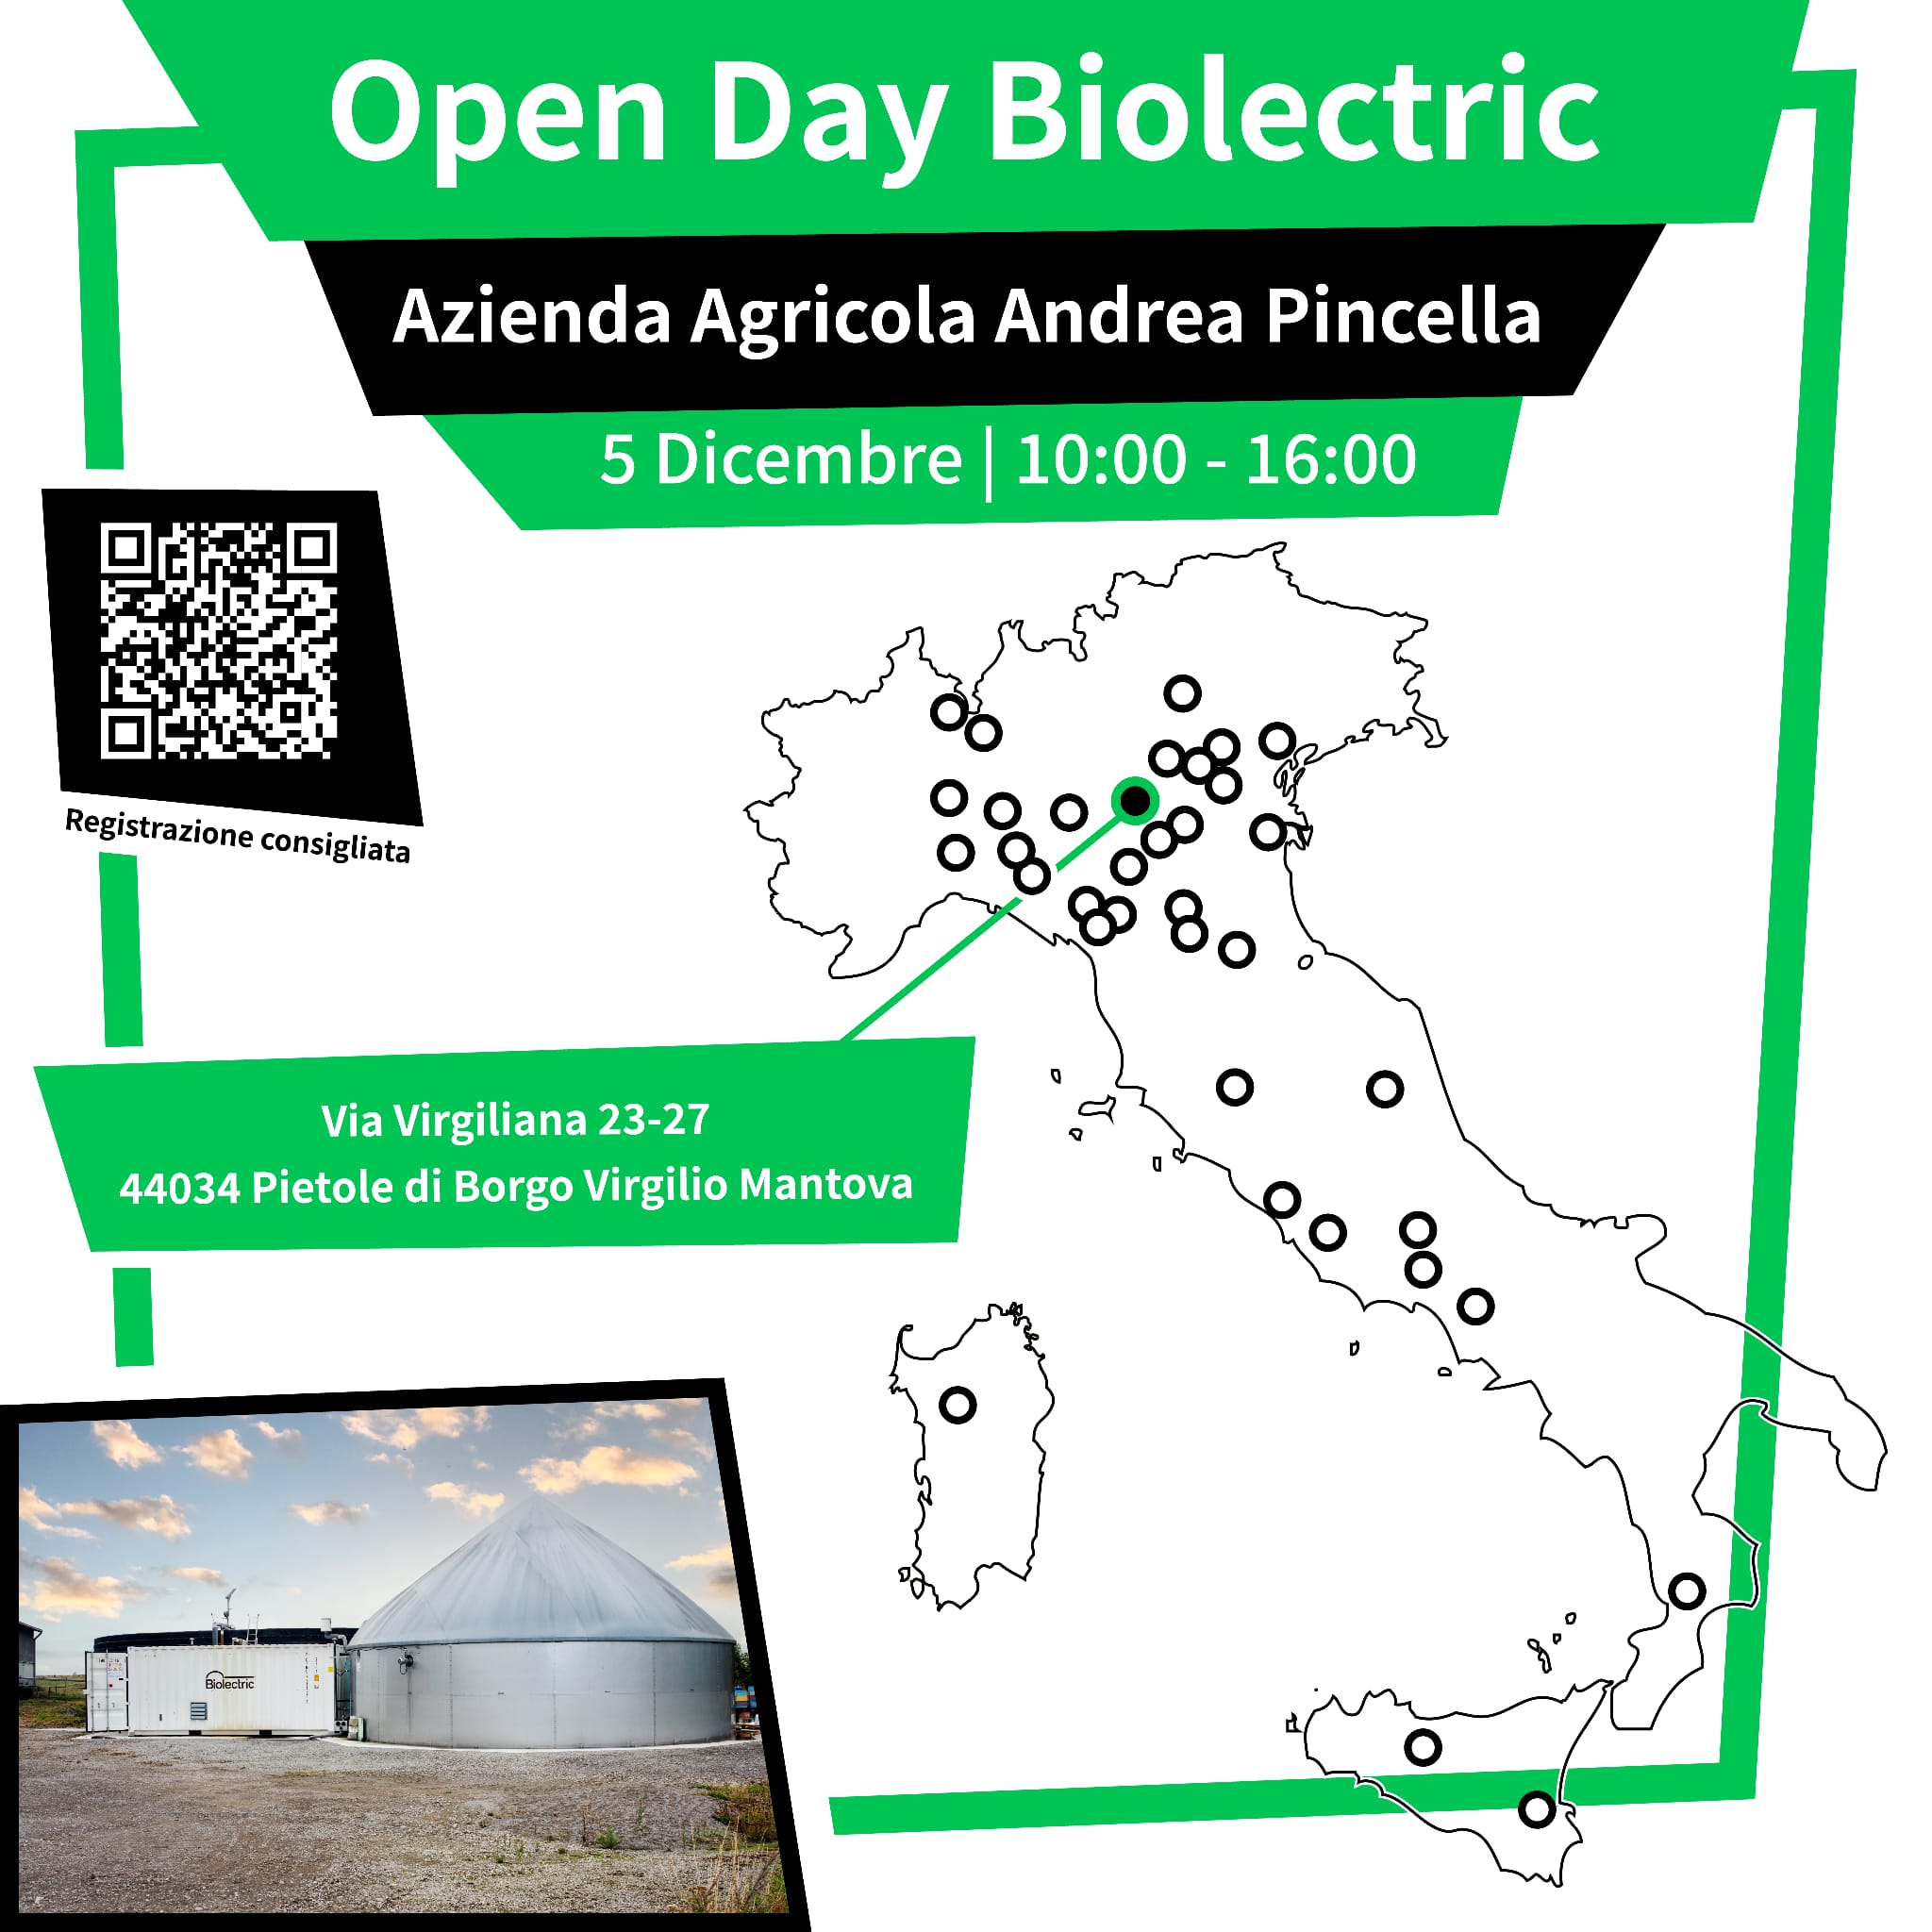 5/12 | OPEN DAY BIOLECTRIC. Azienda Agricola Andrea Pincella